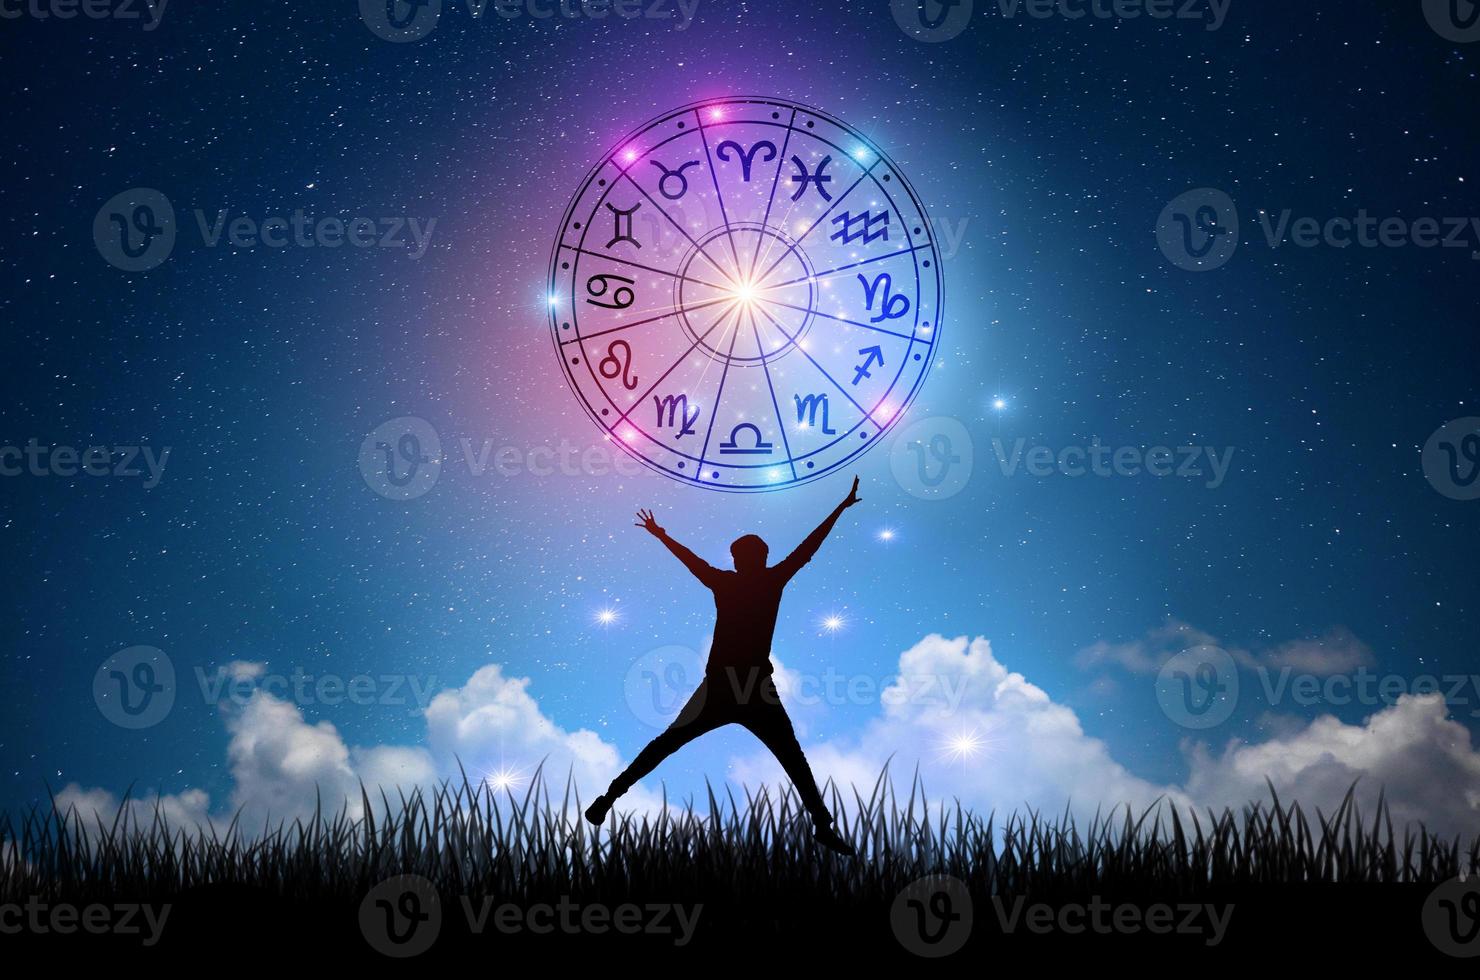 signos del zodíaco dentro del círculo del horóscopo. astrología en el cielo con muchas estrellas y lunas concepto de astrología y horóscopos foto